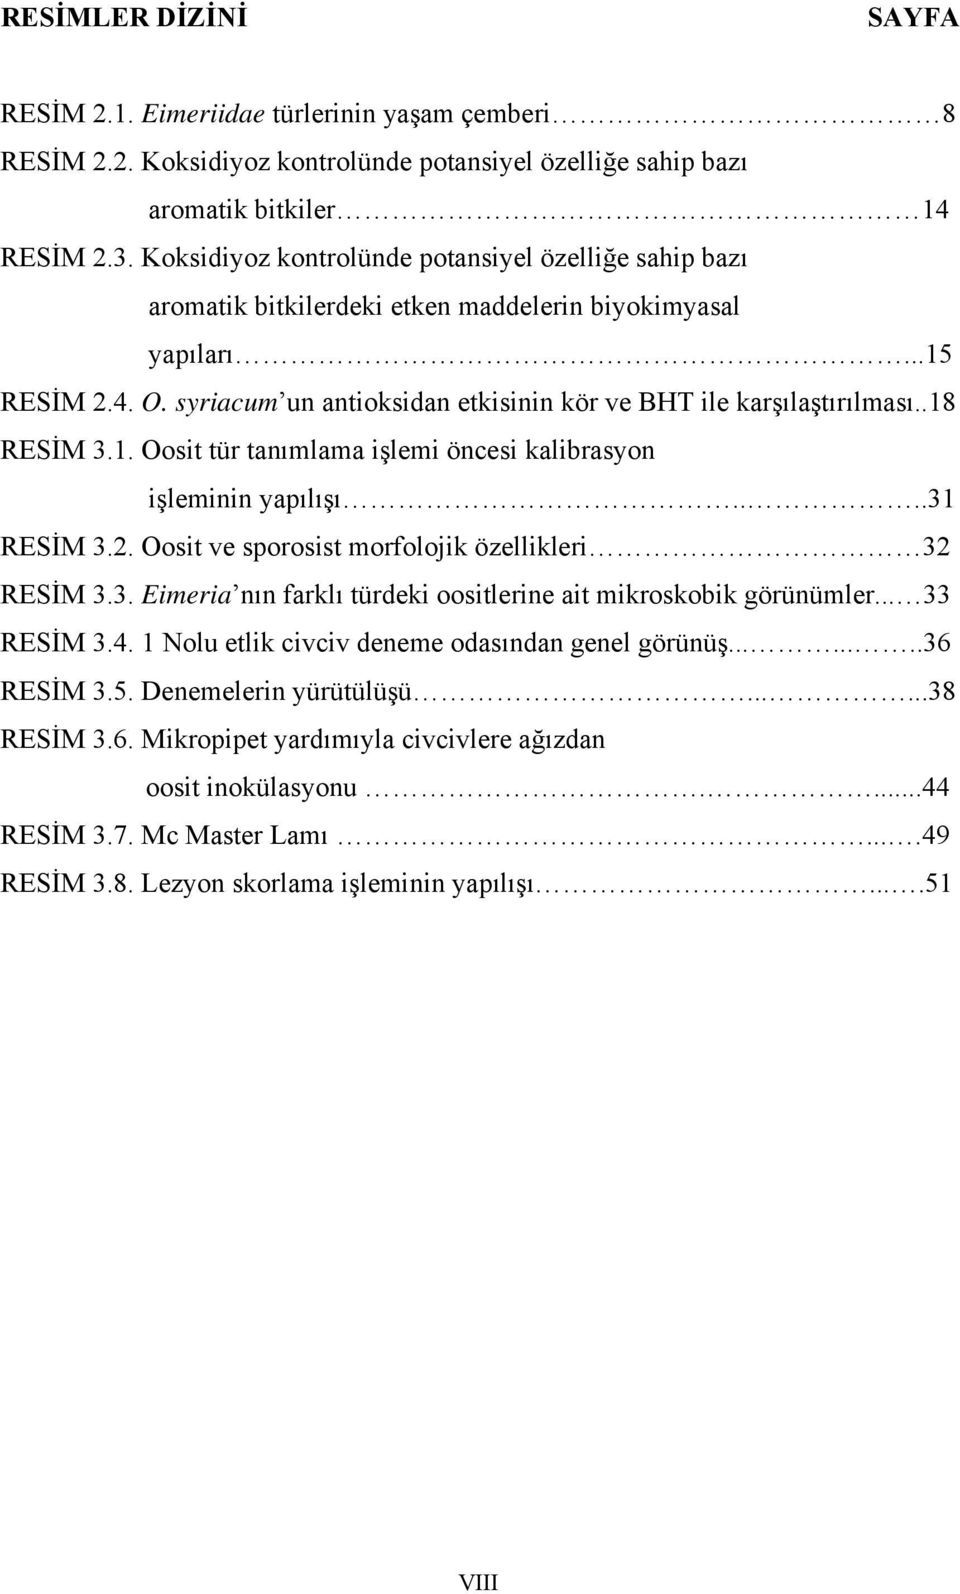 syriacum un antioksidan etkisinin kör ve BHT ile karşılaştırılması..18 RESİM 3.1. Oosit tür tanımlama işlemi öncesi kalibrasyon işleminin yapılışı....31 RESİM 3.2.